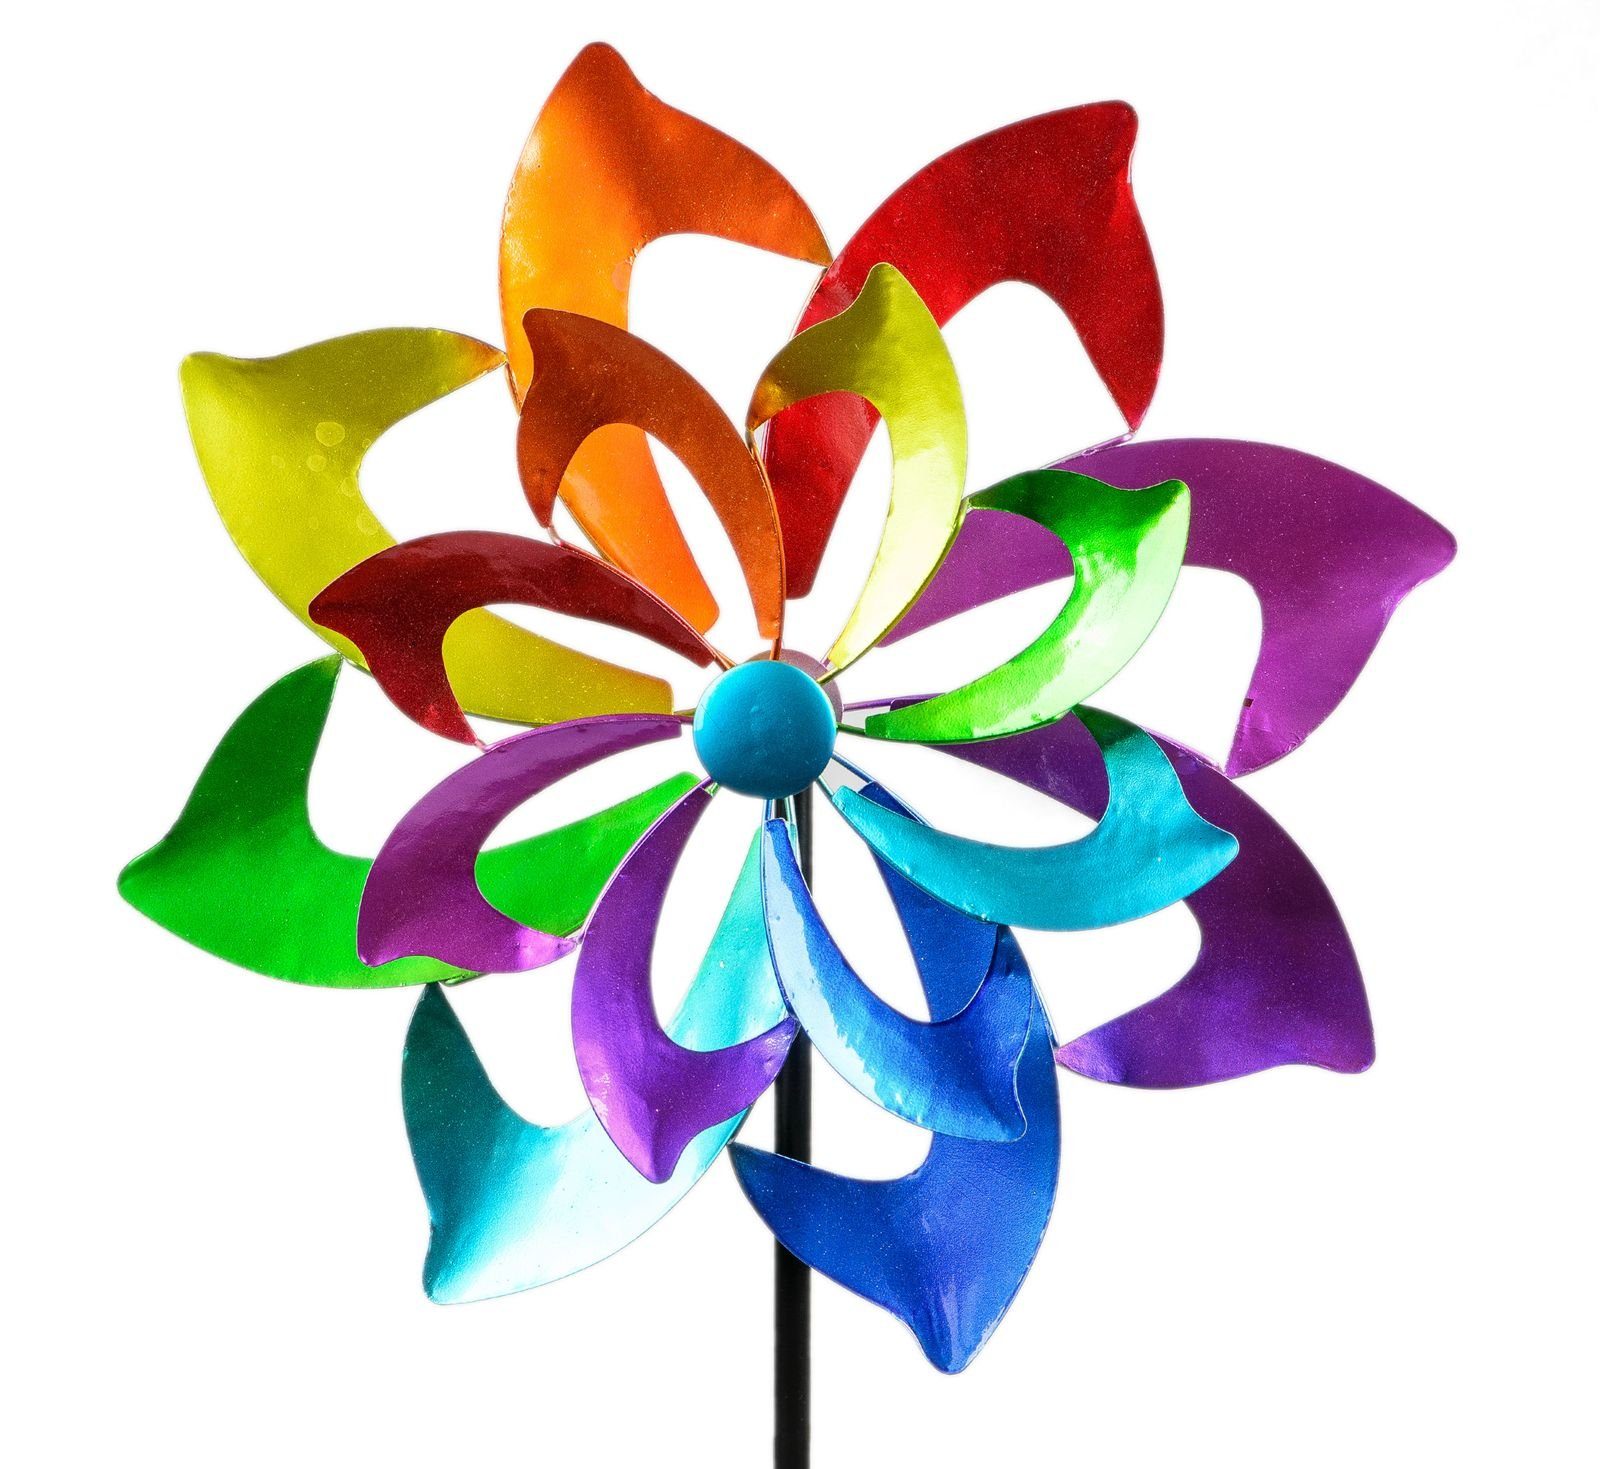 unvergesslich Kremers Schatzkiste Gartenfigur Buntes Windrad Metall Blume für aus Garten den